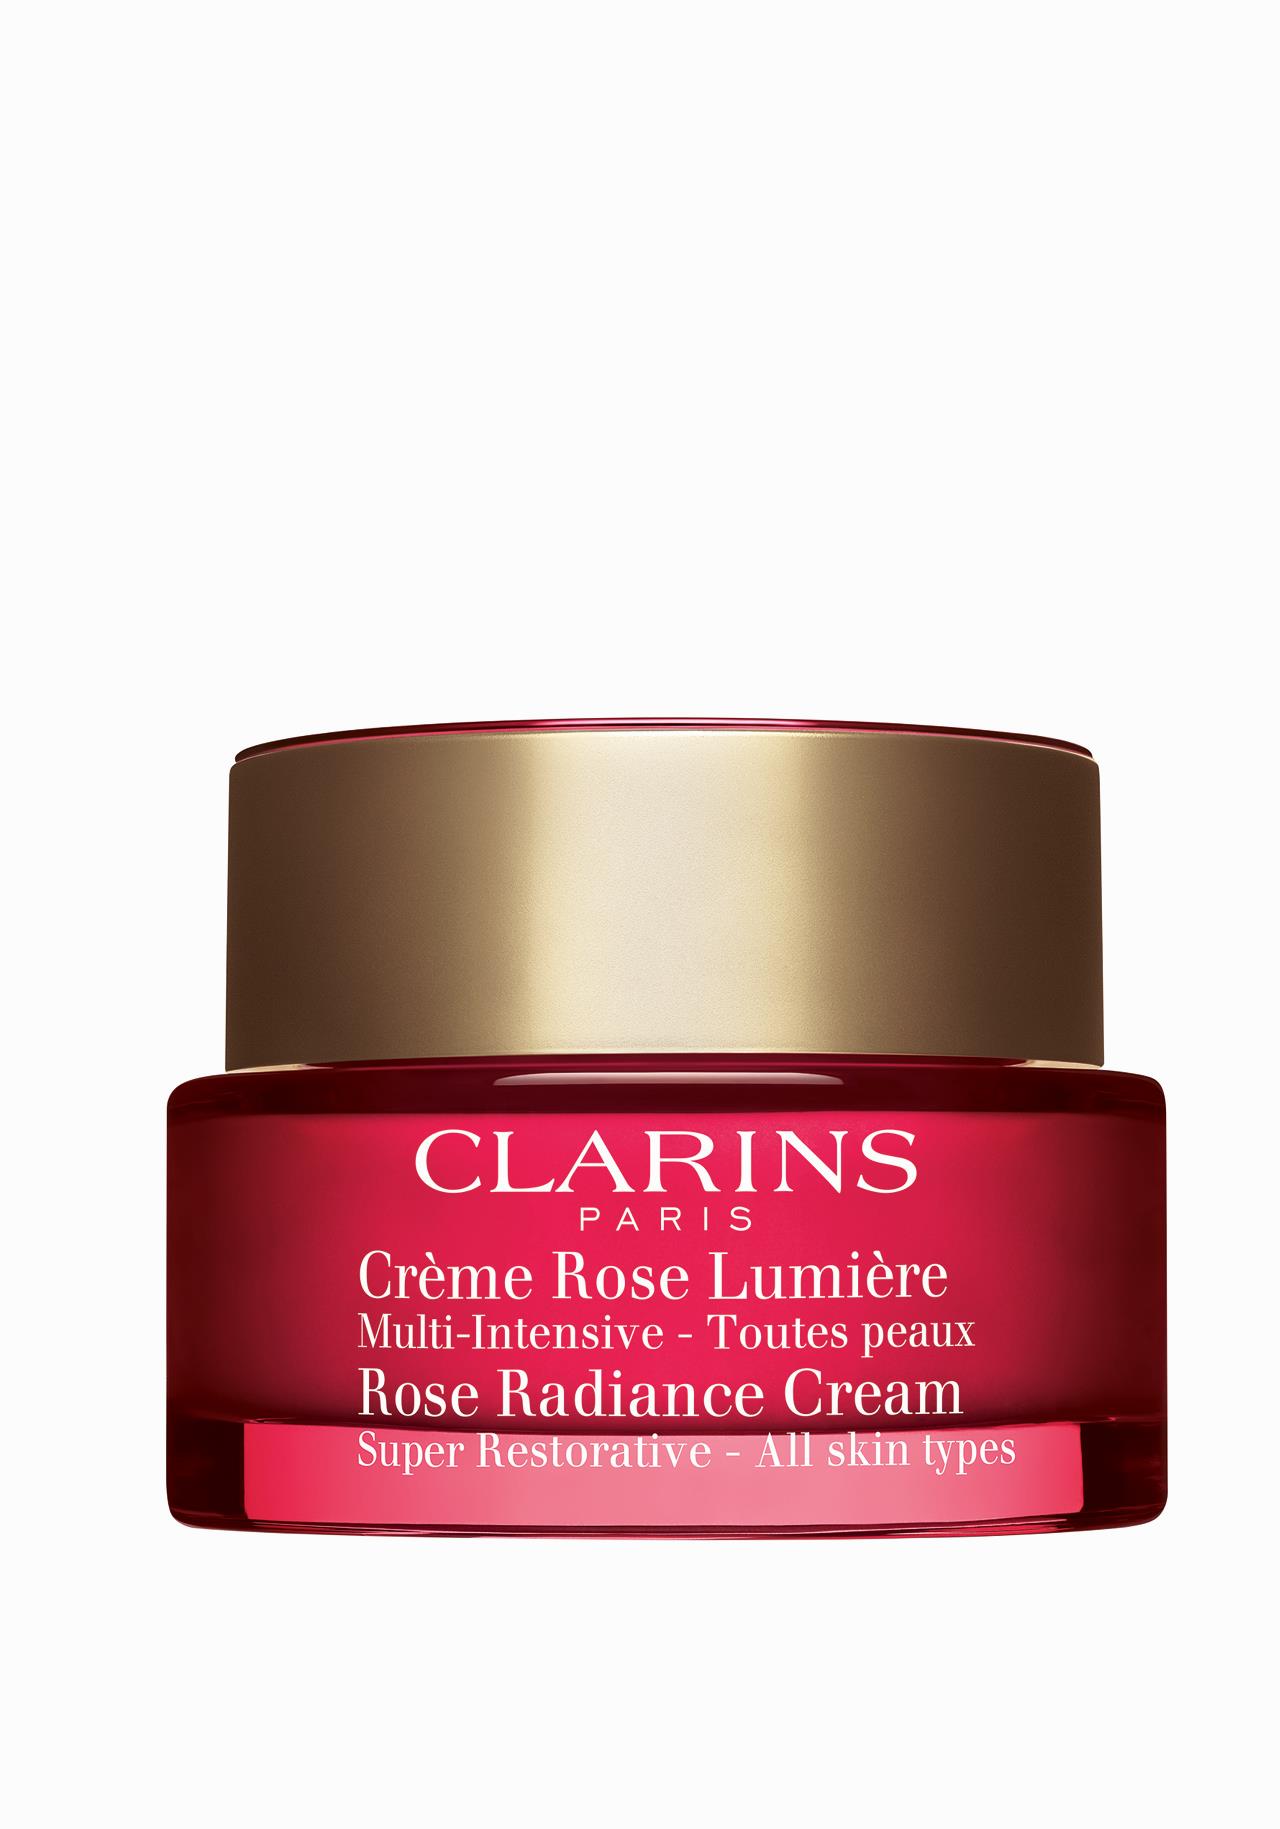 Crema antiedad Crème Rose Lumière de Clarins Las mejores cremas para mujeres de 50 años y más 2019